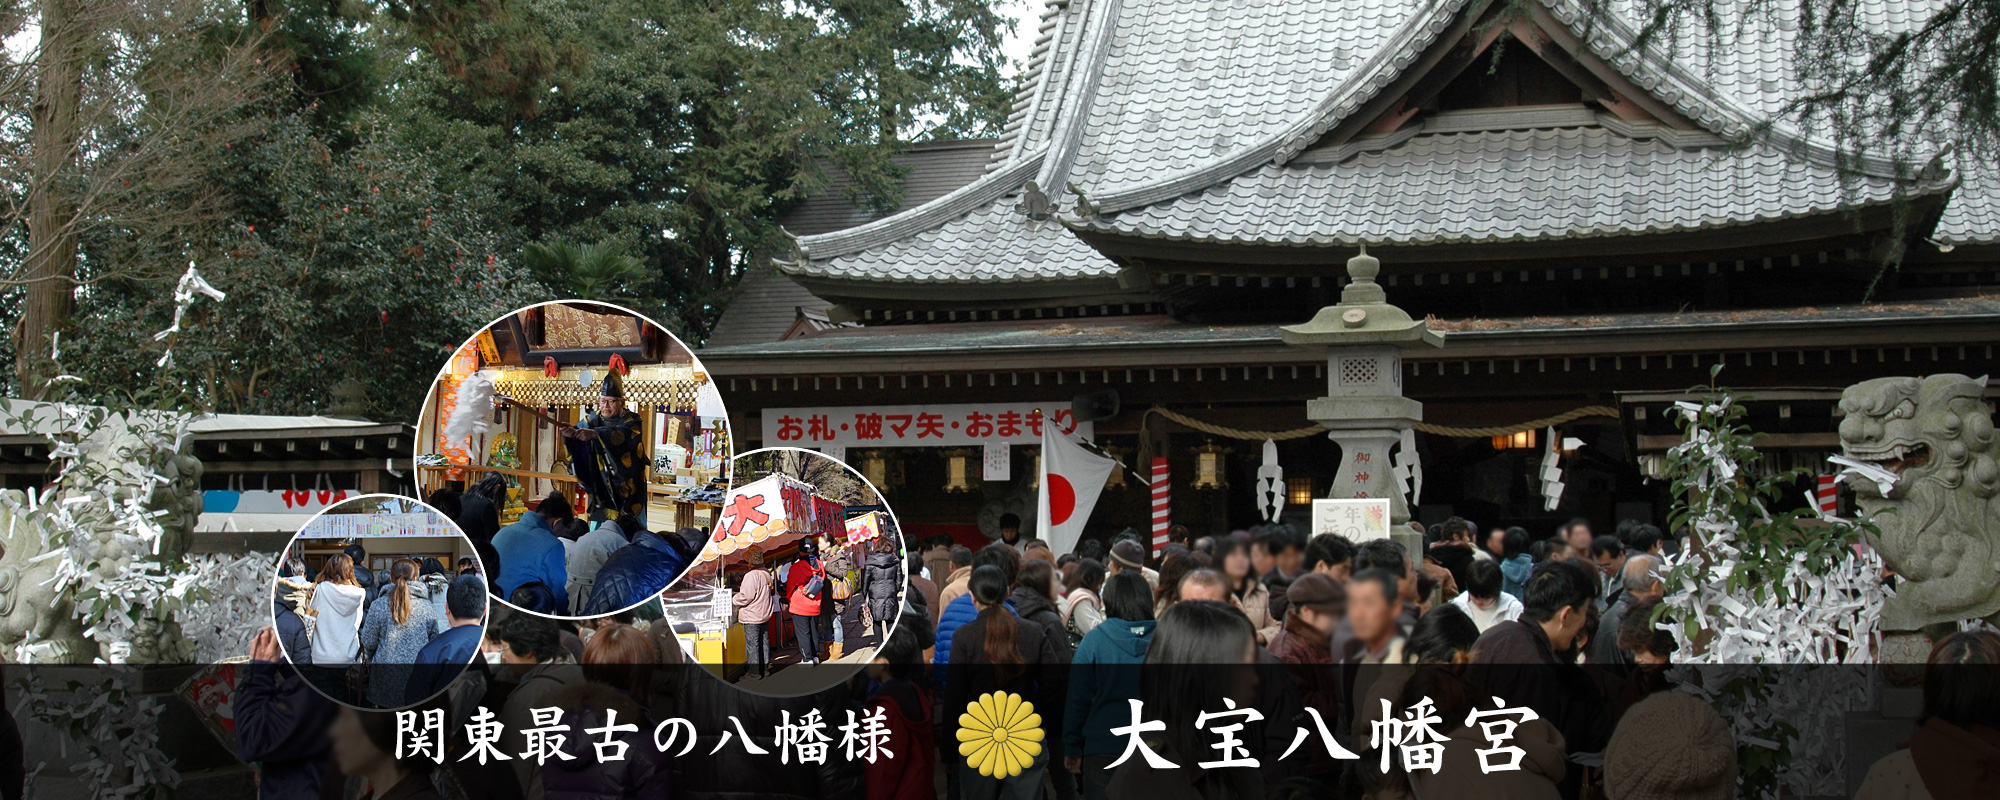 関東最古の八幡様の大宝八幡宮